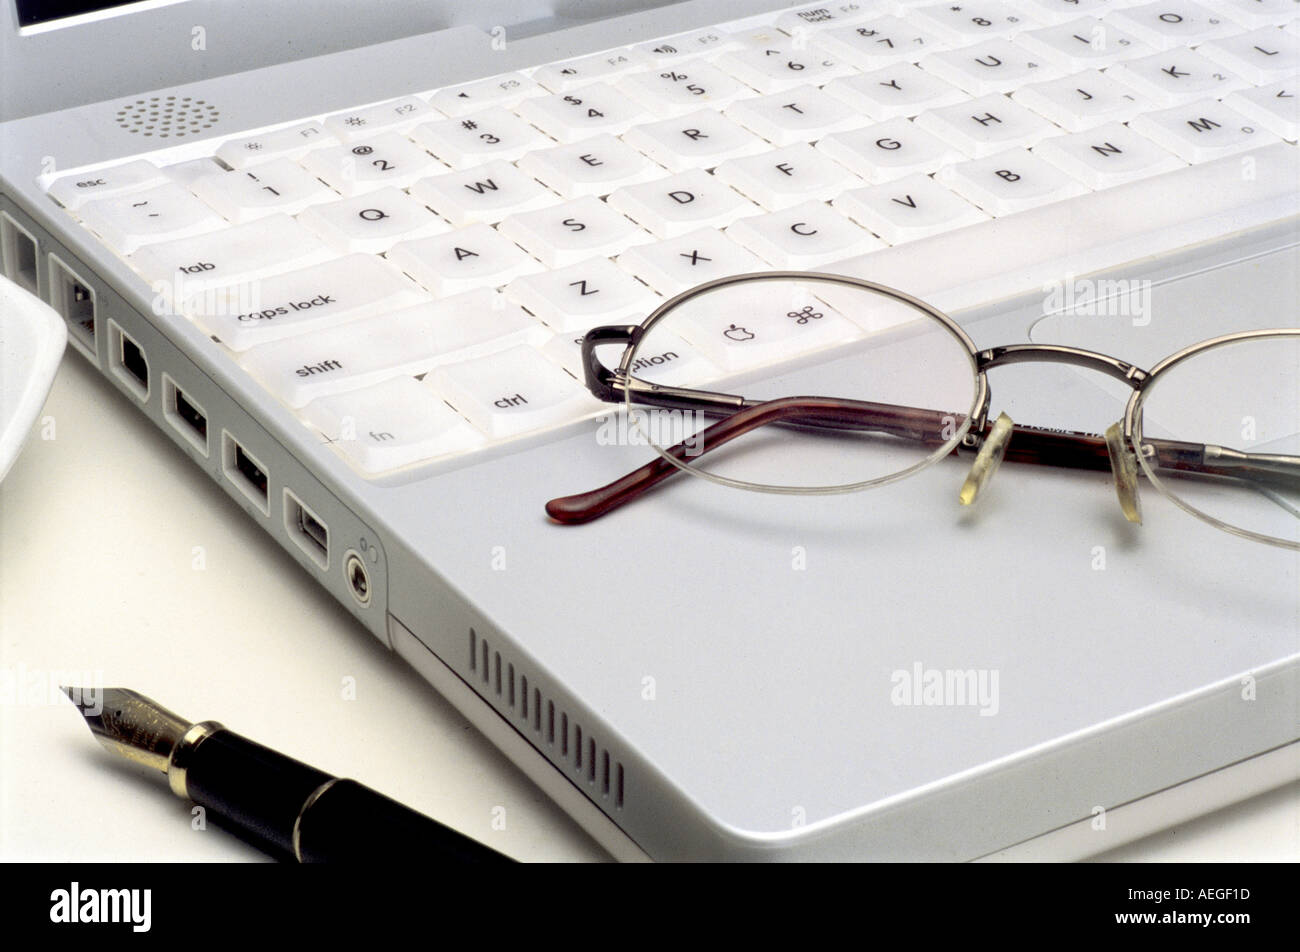 Ufficio portatile dettaglio penna stilografica occhiali occhiali i tasti della tastiera del calcolatore di tecnologia il concetto di business Foto Stock